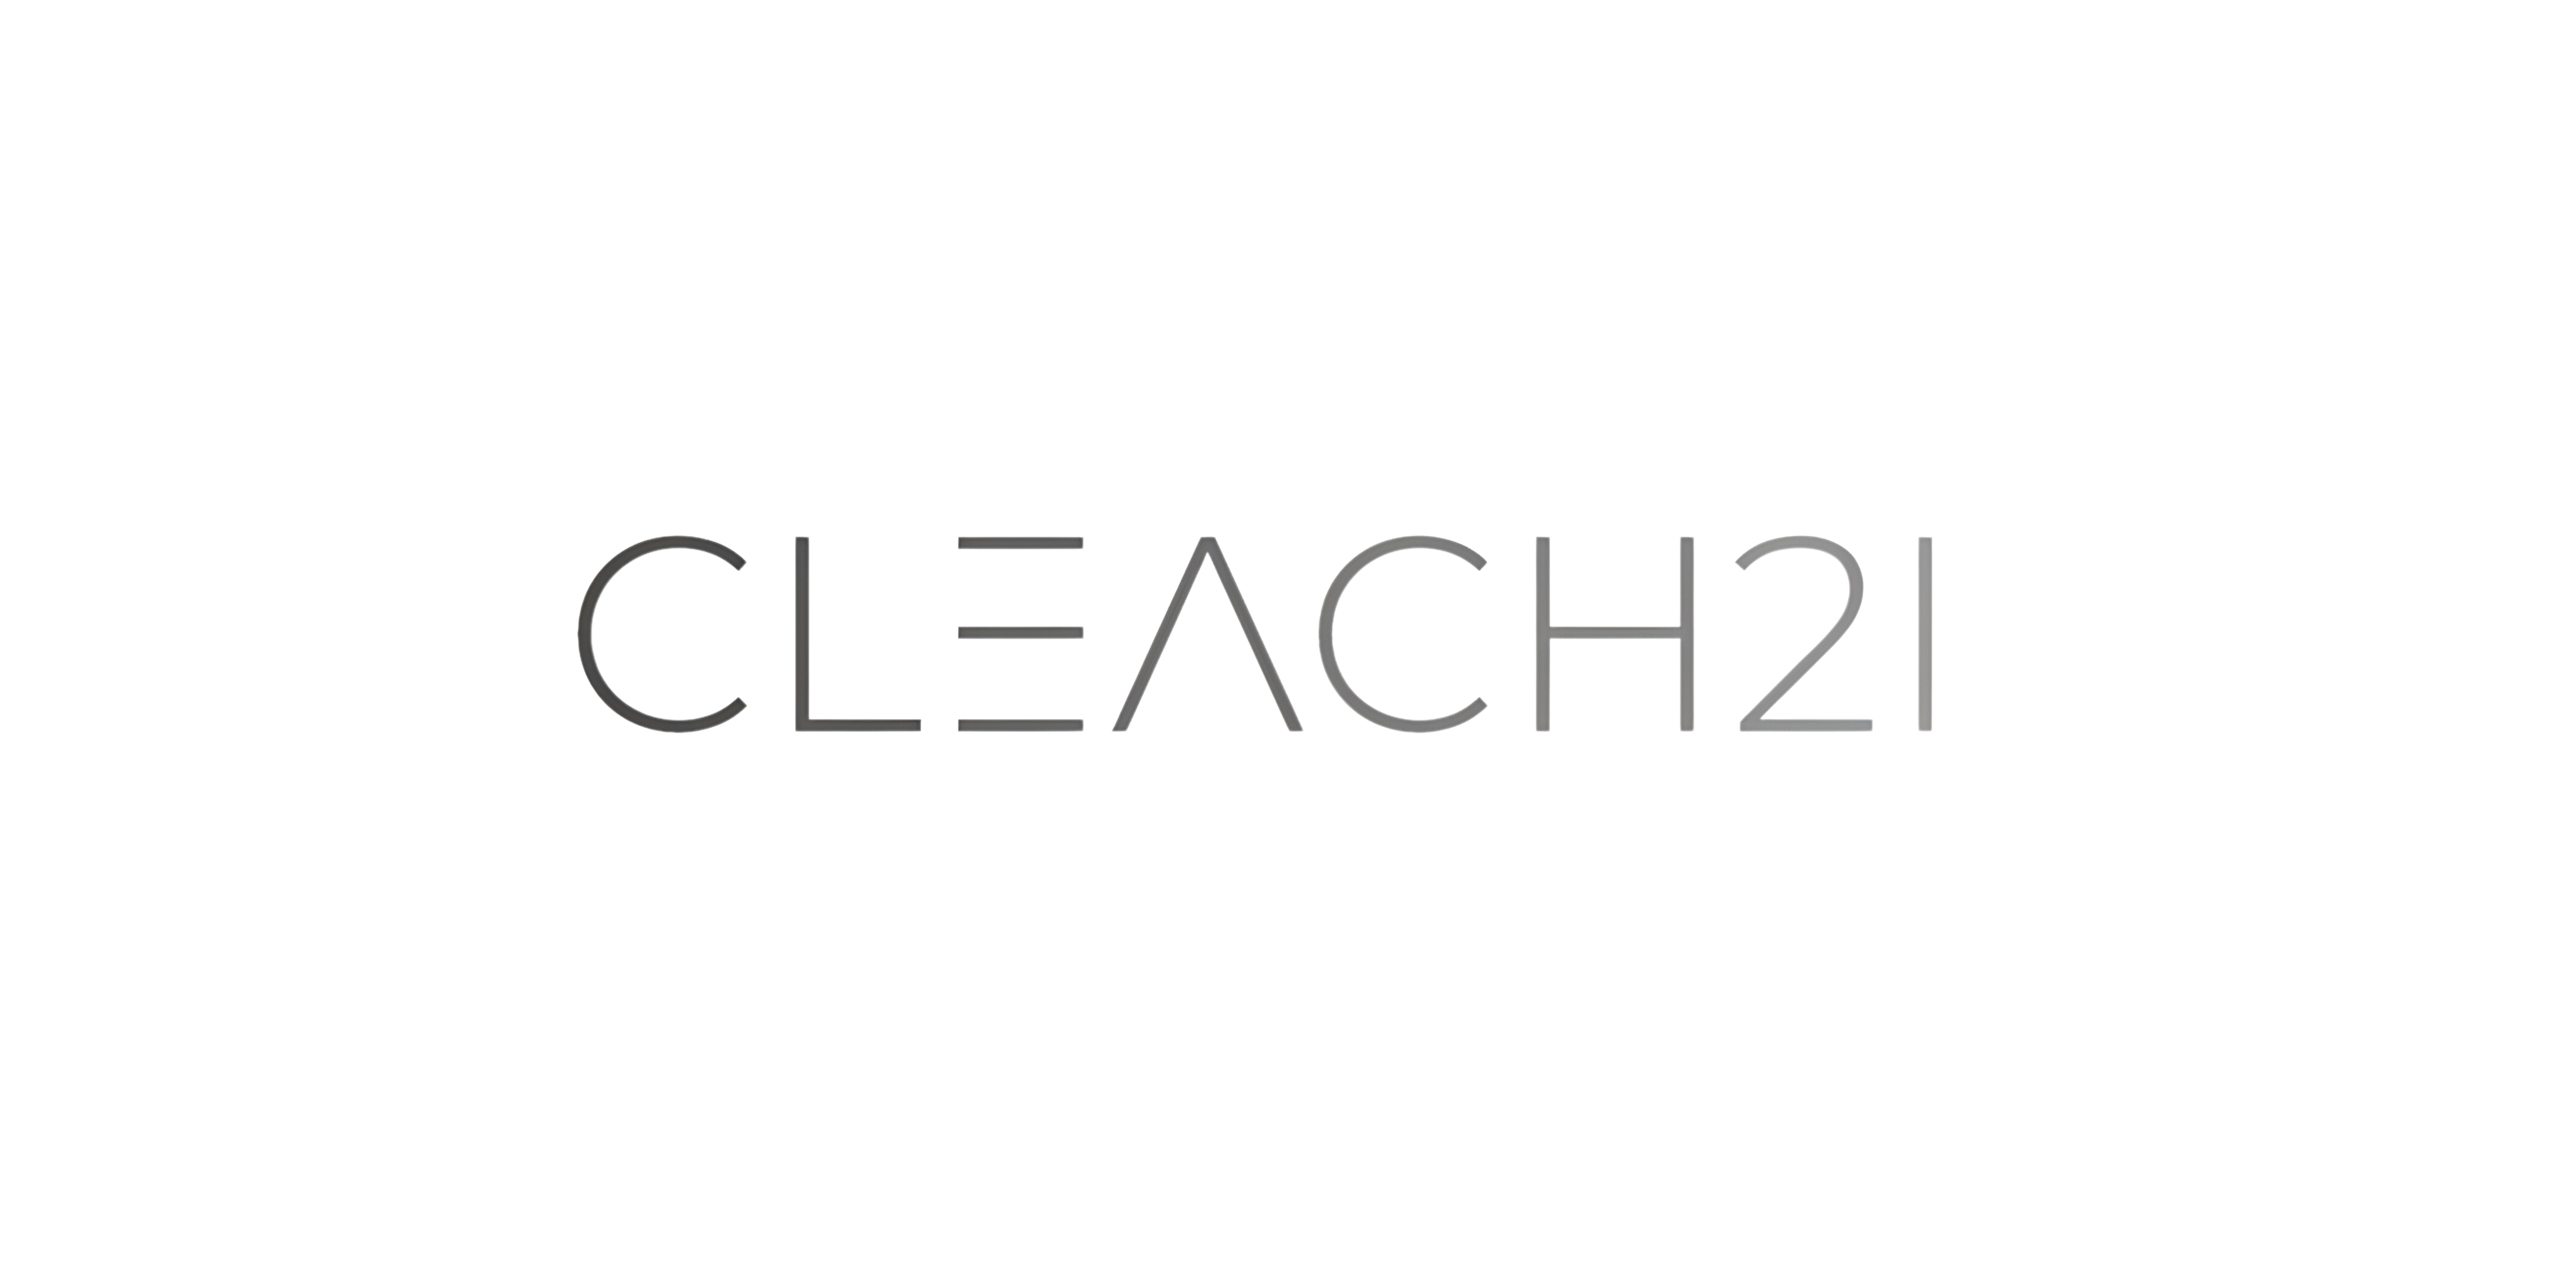 CLEACH2I